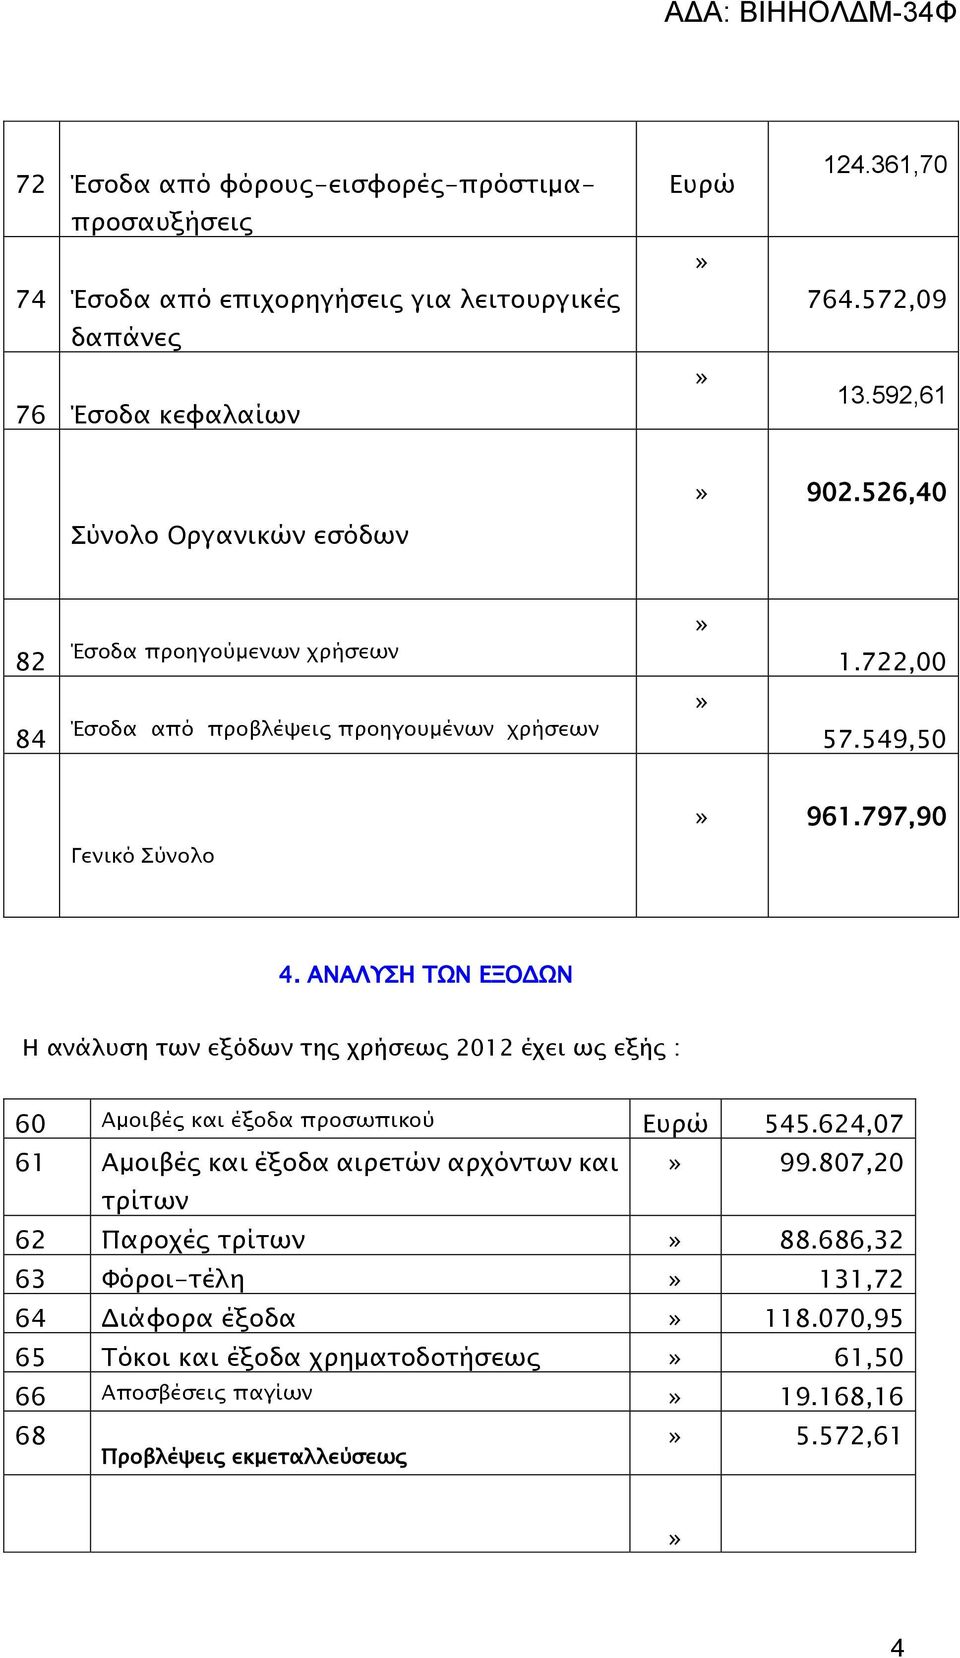 ΑΝΑΛΥΣΗ ΤΩΝ ΕΞΟΔΩΝ Η ανάλυση των εξόδων της χρήσεως 2012 έχει ως εξής : 60 Αμοιβές και έξοδα προσωπικού Ευρώ 545.624,07 61 Αμοιβές και έξοδα αιρετών αρχόντων και» 99.